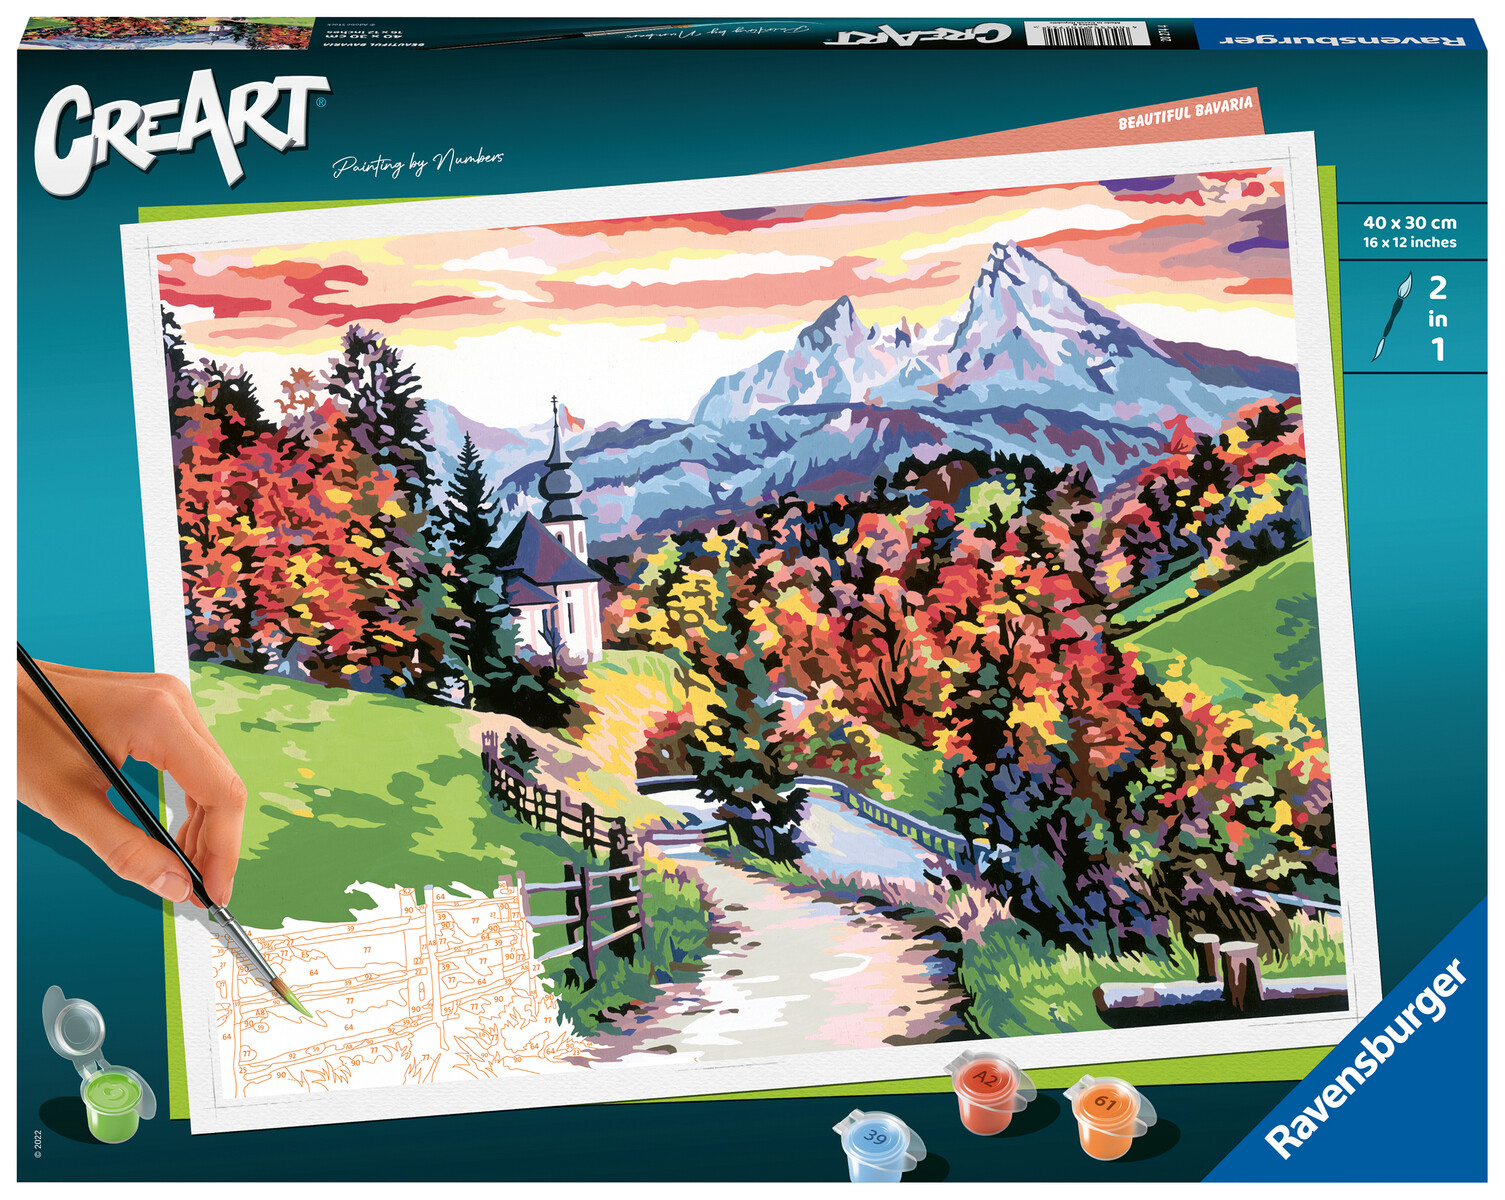 Ravensburger - creart paesaggio prealpino, kit per dipingere con i numeri, contiene tavola prestampata 40x30 cm, pennello, colori e accessori, gioco creativo per adulti 14+ anni - CREART